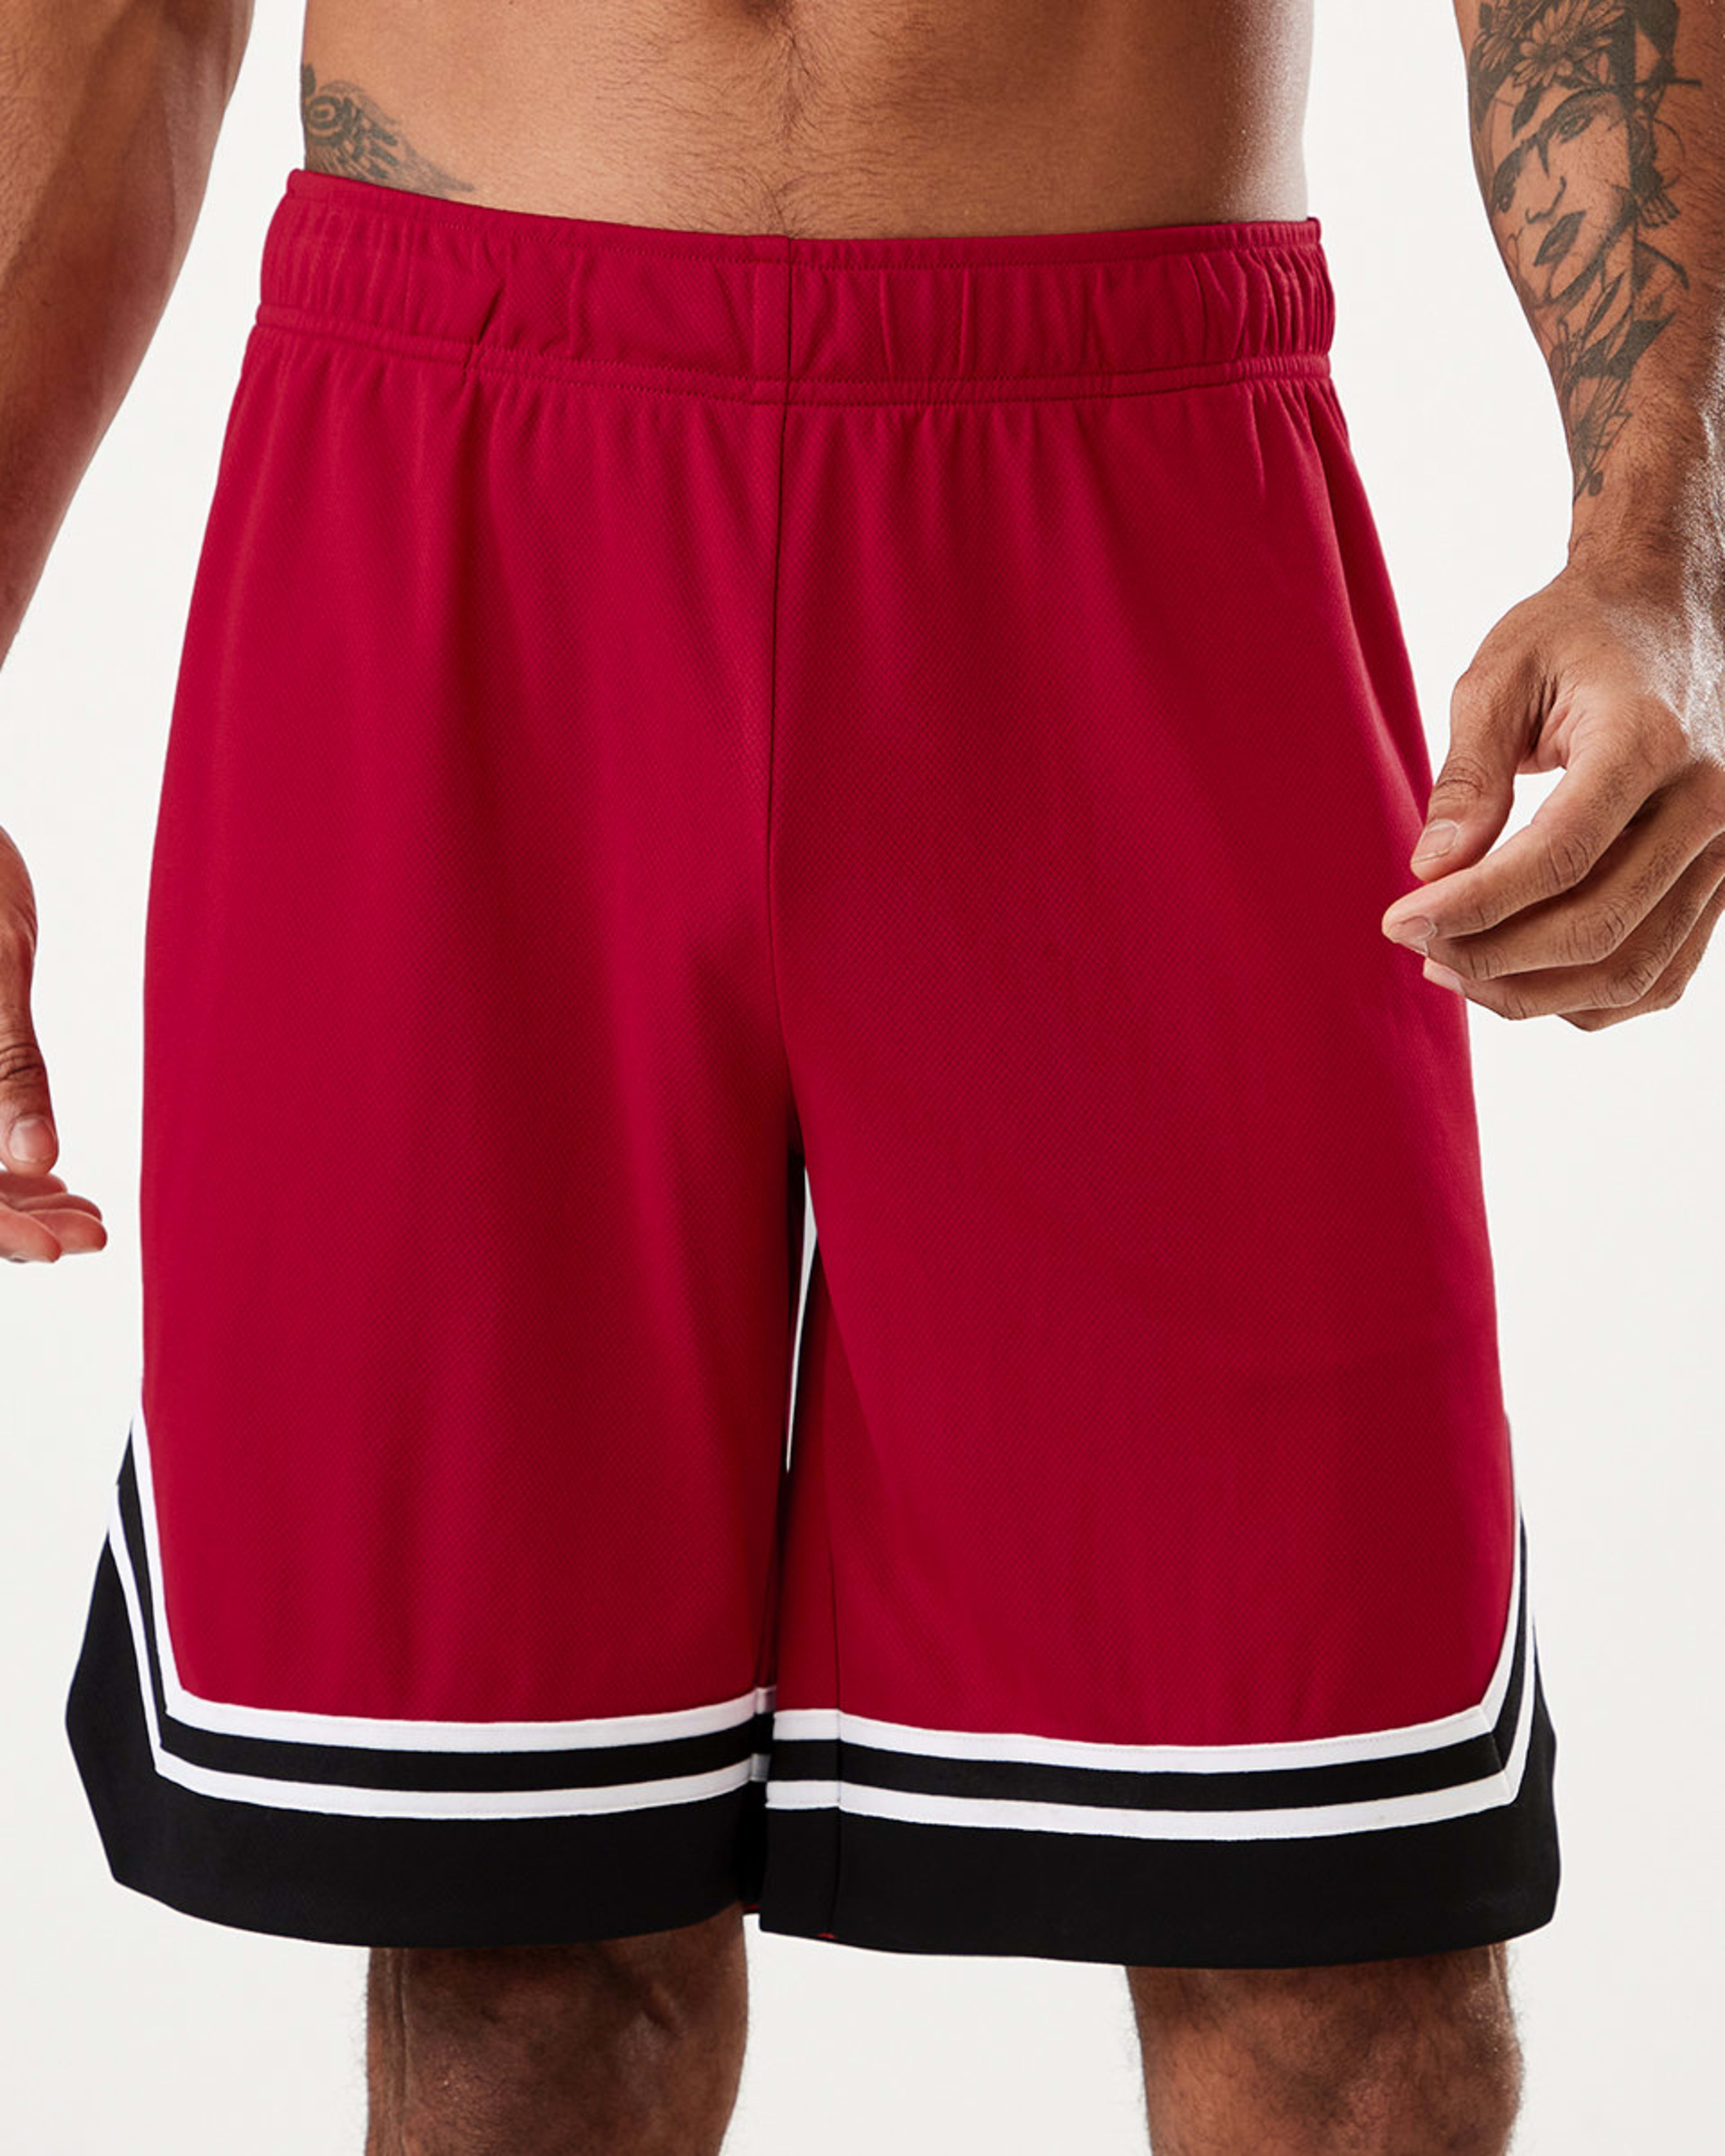 Active Mens Basketball Shorts - Kmart